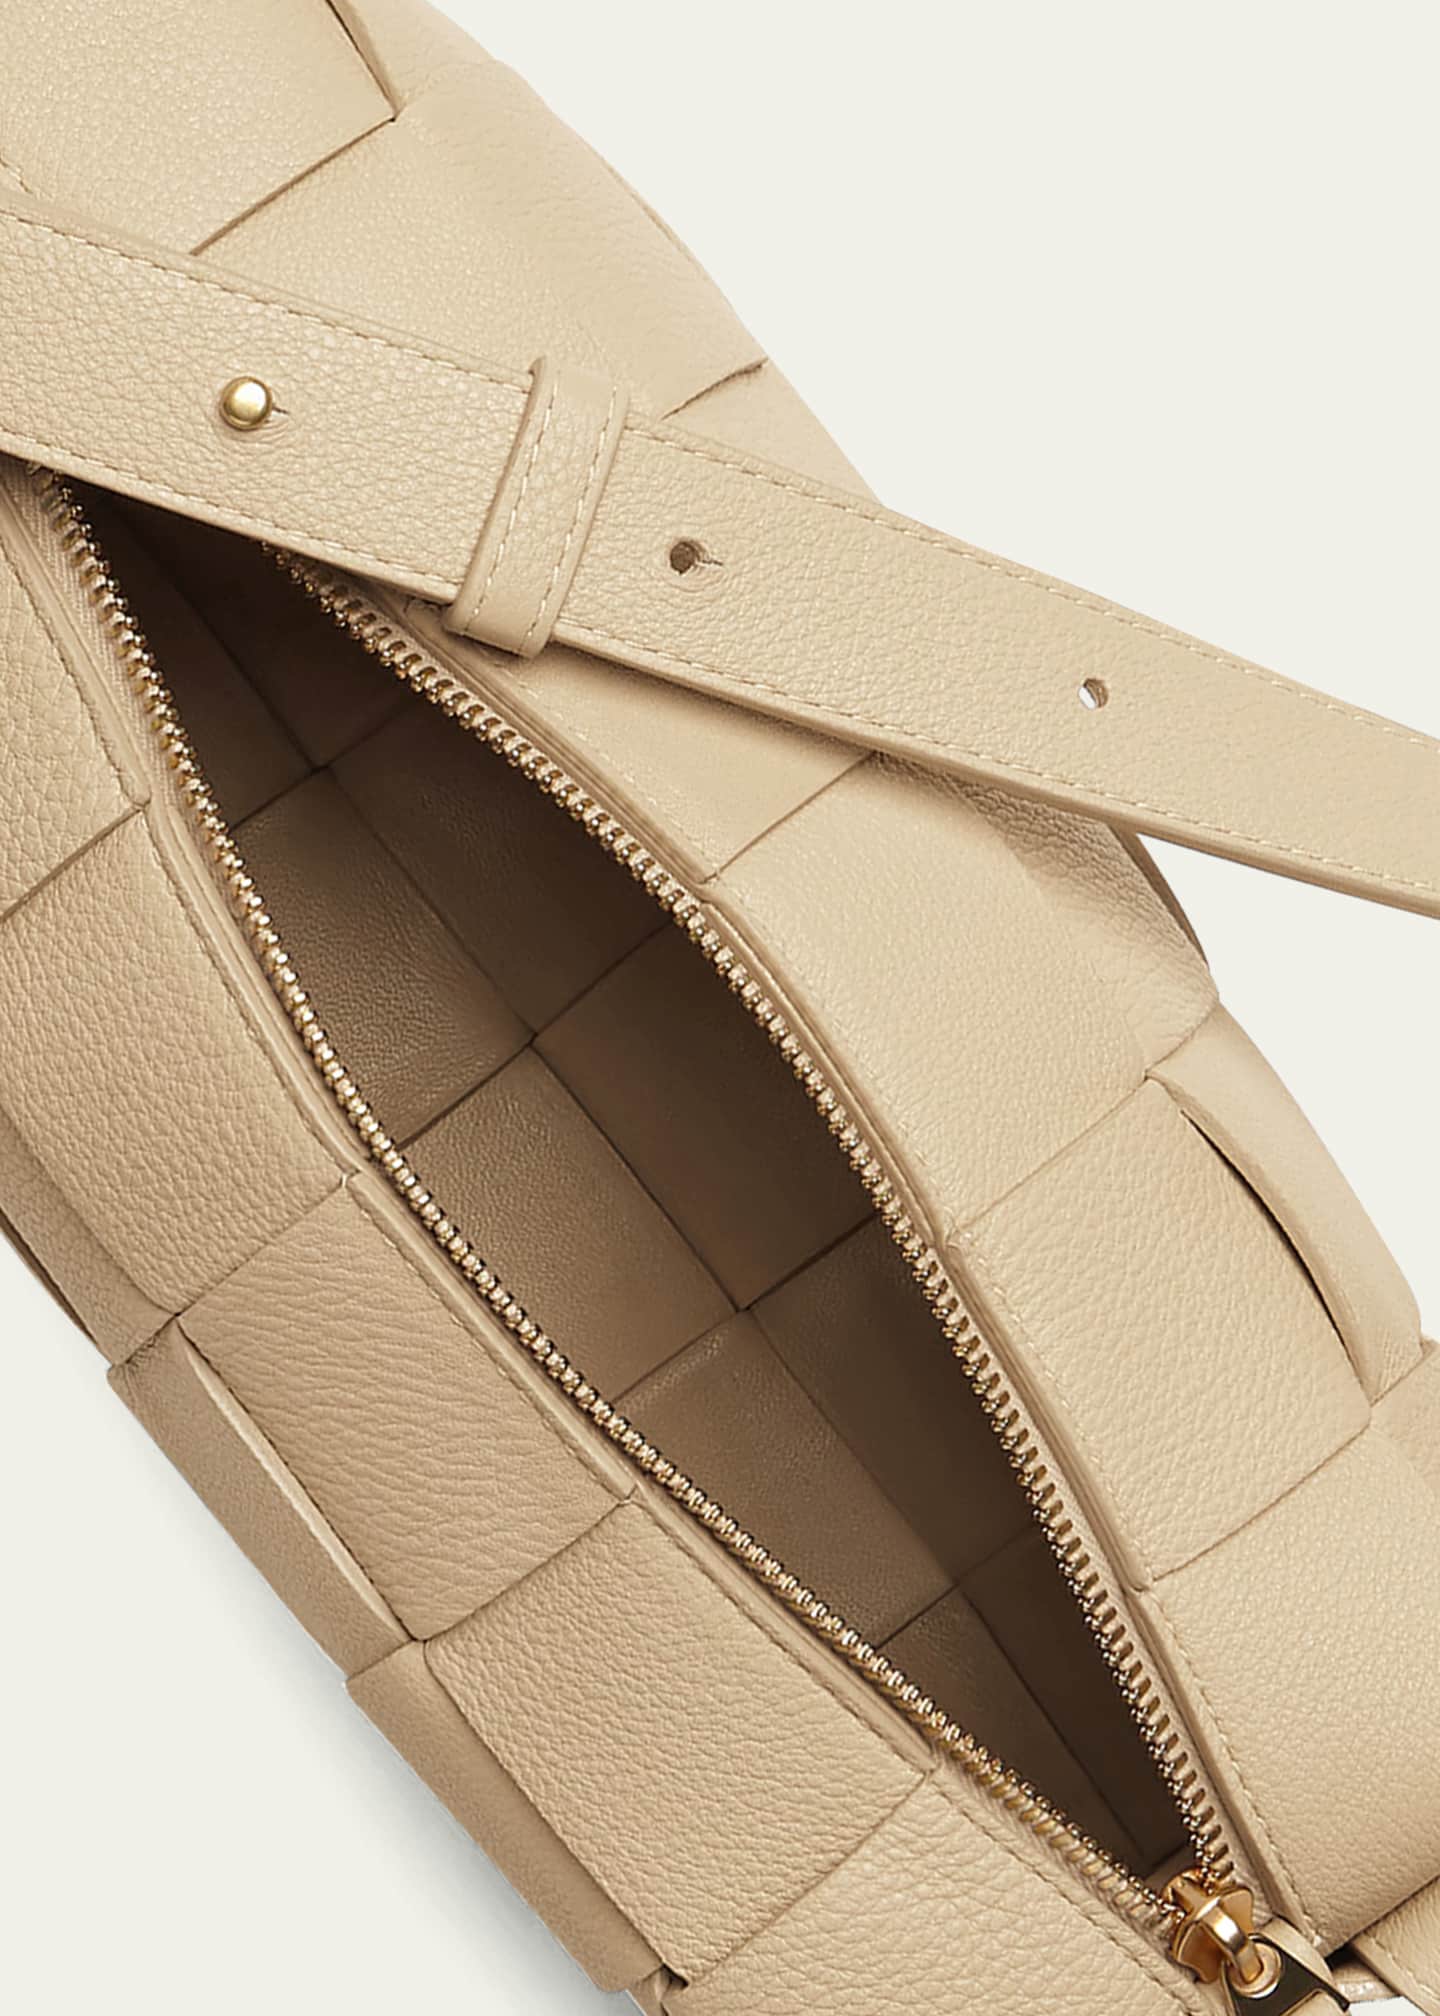 Intrecciato Leather Shoulder Bag in Brown - Bottega Veneta